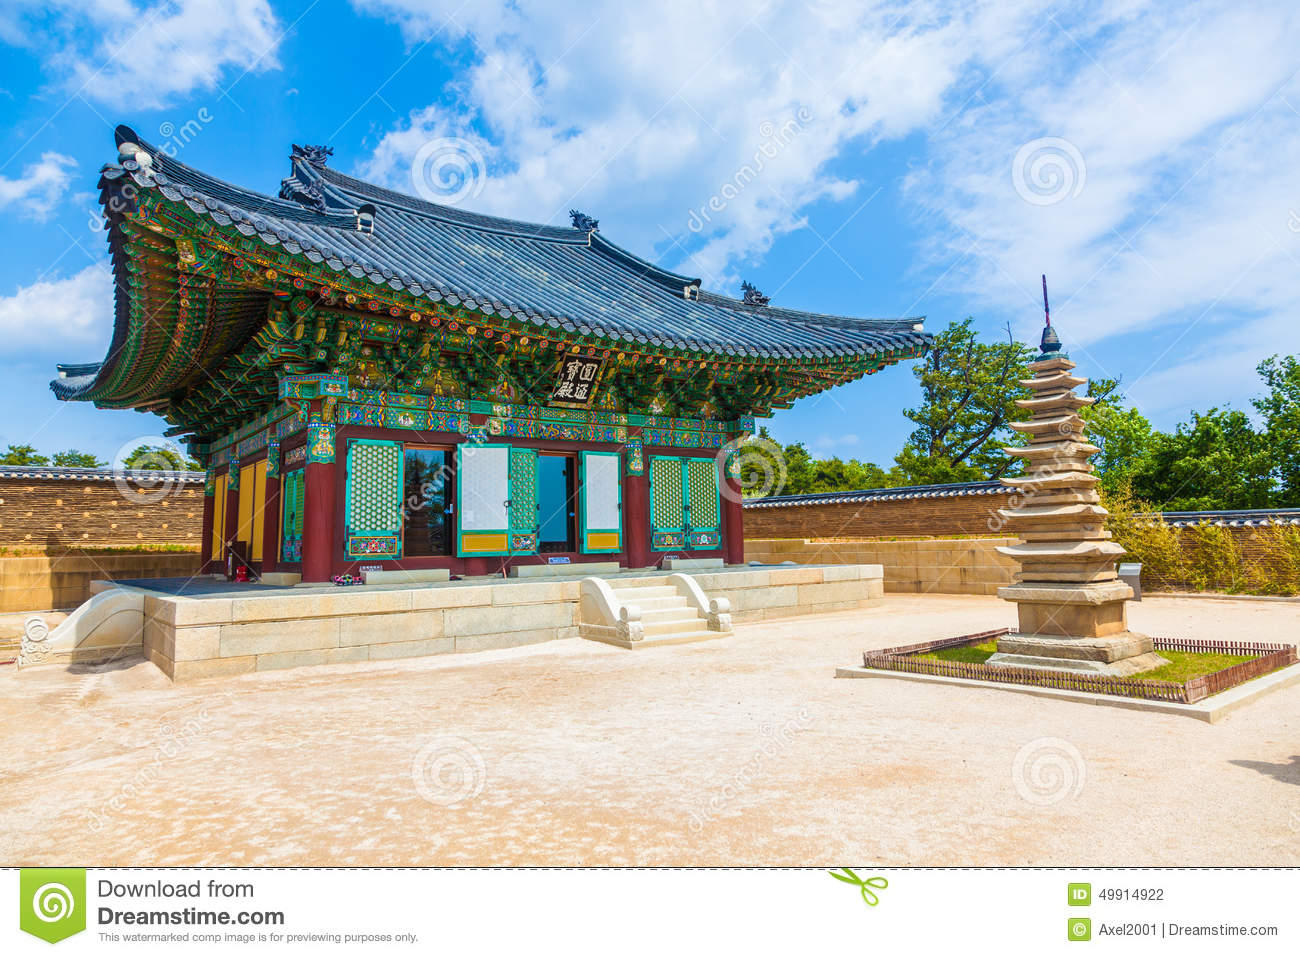 Naksansa Temple In Sokcho, South Korea. Stock Photo.